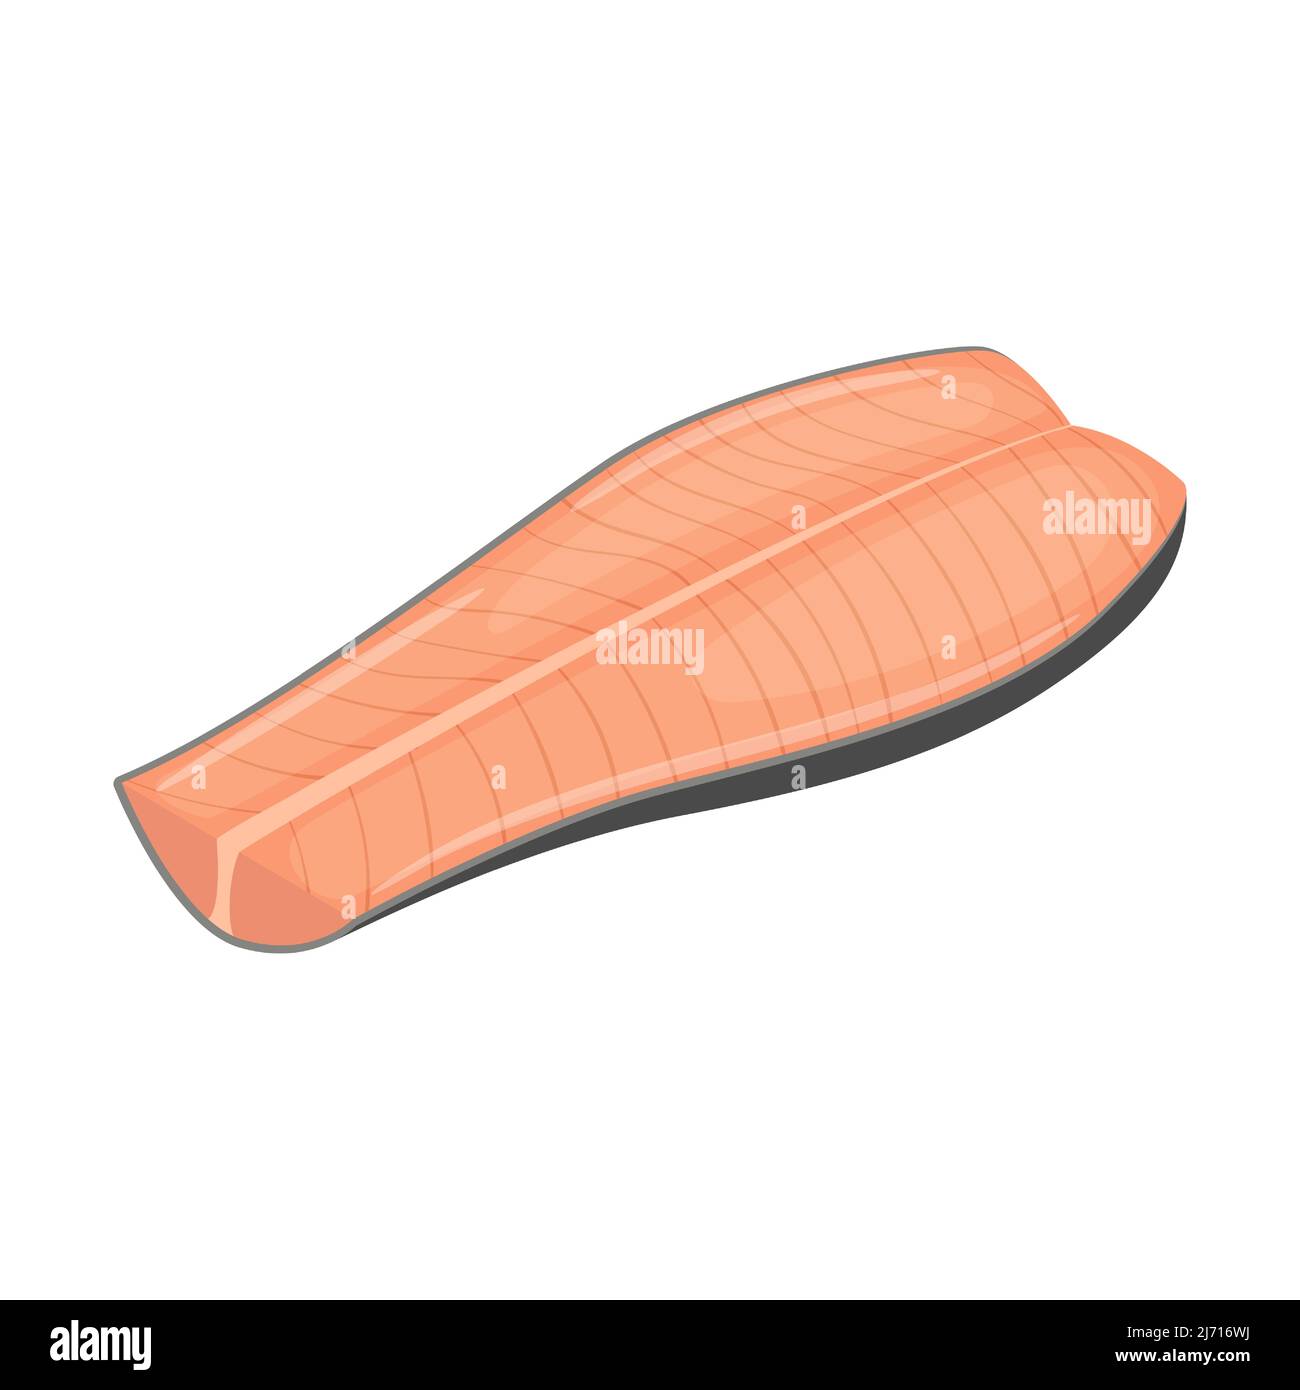 Un pezzo di pesce rosso in una sezione longitudinale. Filetto di salmone rosa o salmone. Carne cruda di pesce di mare, un ingrediente alimentare. Pesce sbucciato. Cartoon piatto Vec Illustrazione Vettoriale